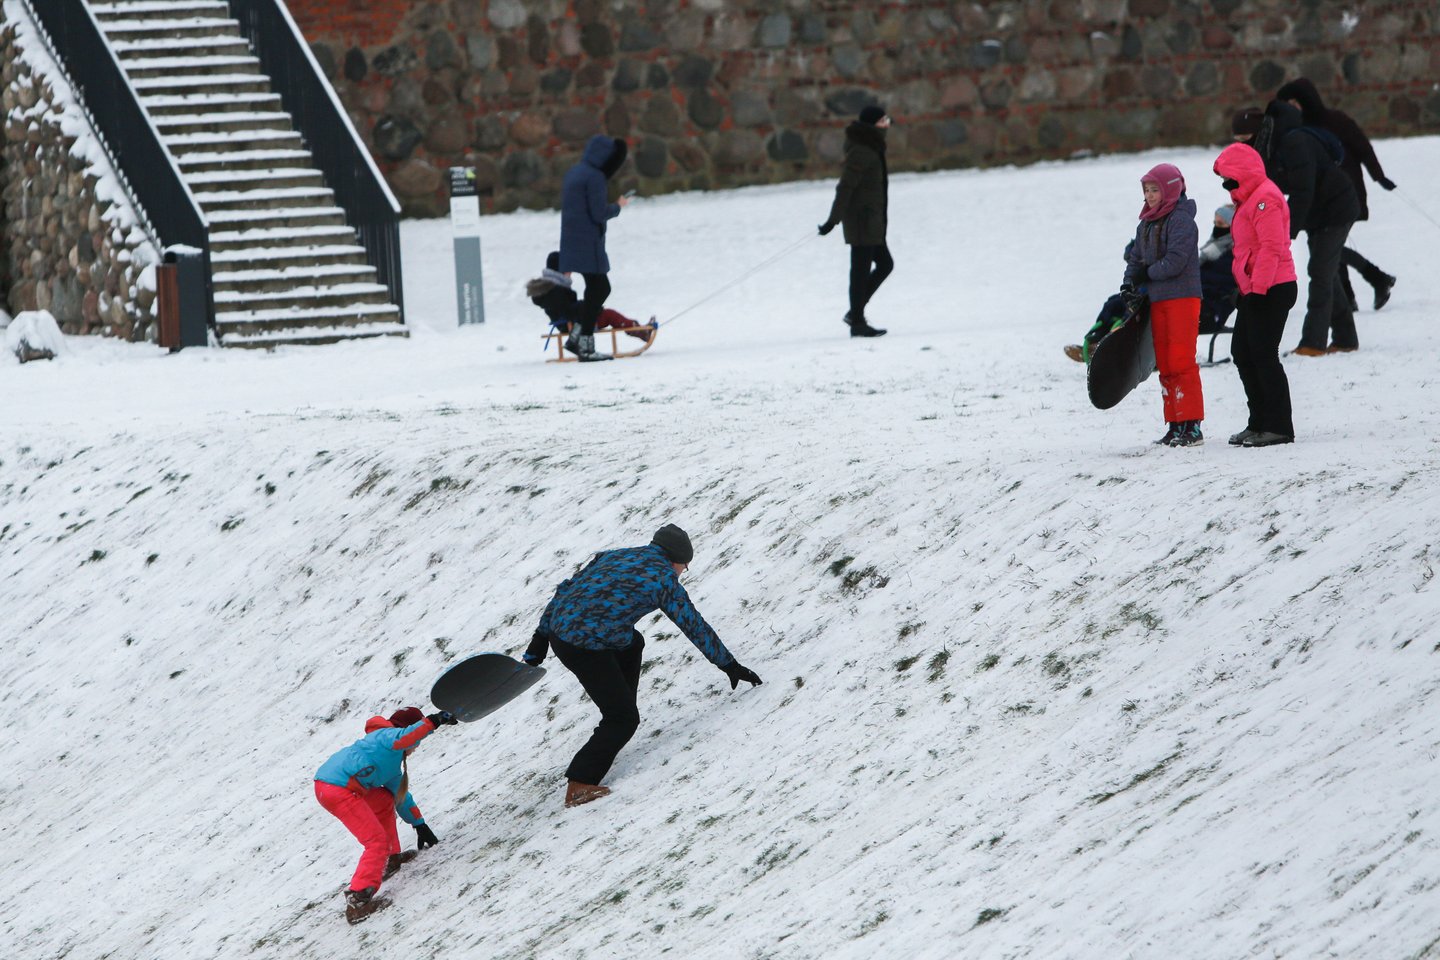 Kauniečiai snieguotą šeštadienį patraukė ant kalvų ir skardžių.<br> G.Bitvinsko nuotr.